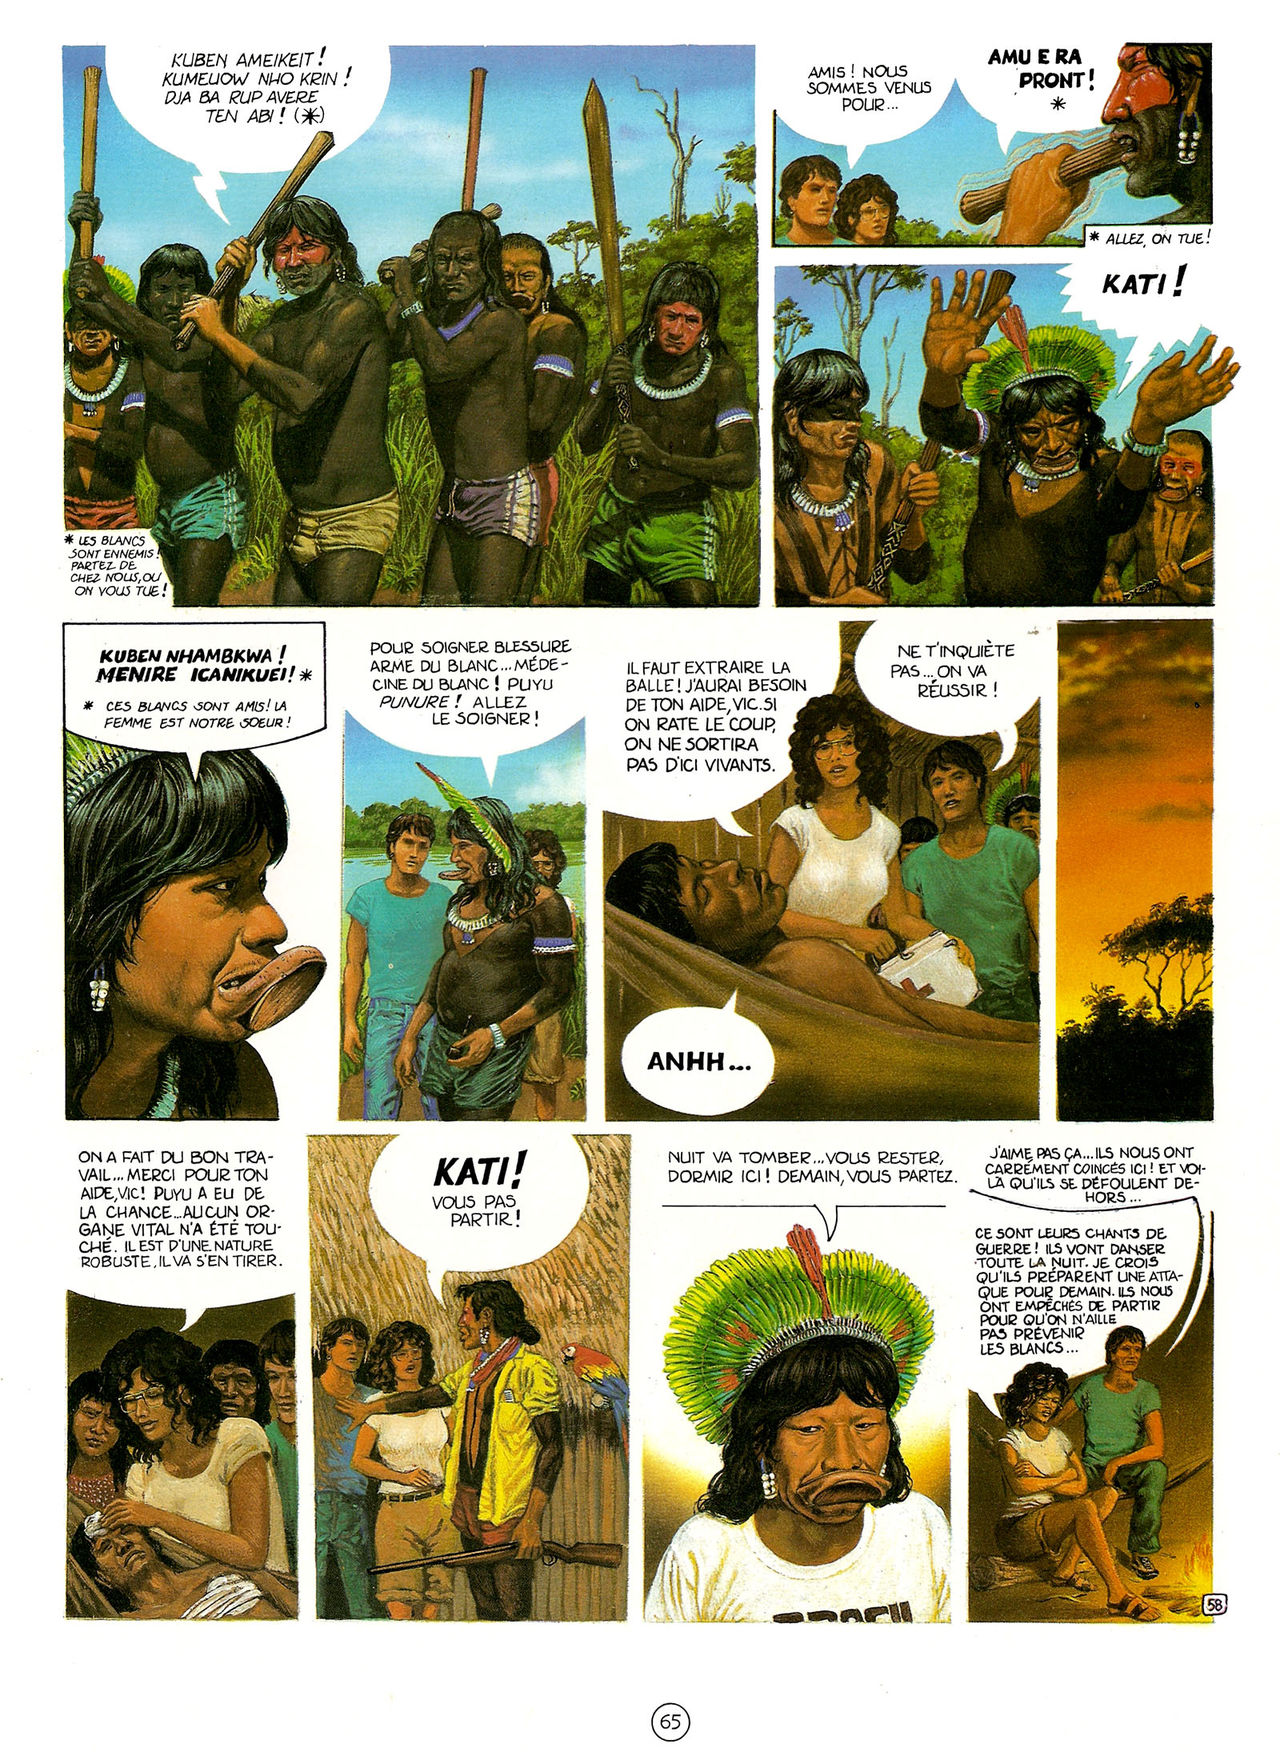 Les Aventures de Vic Voyage 05 - Brazil! numero d'image 65